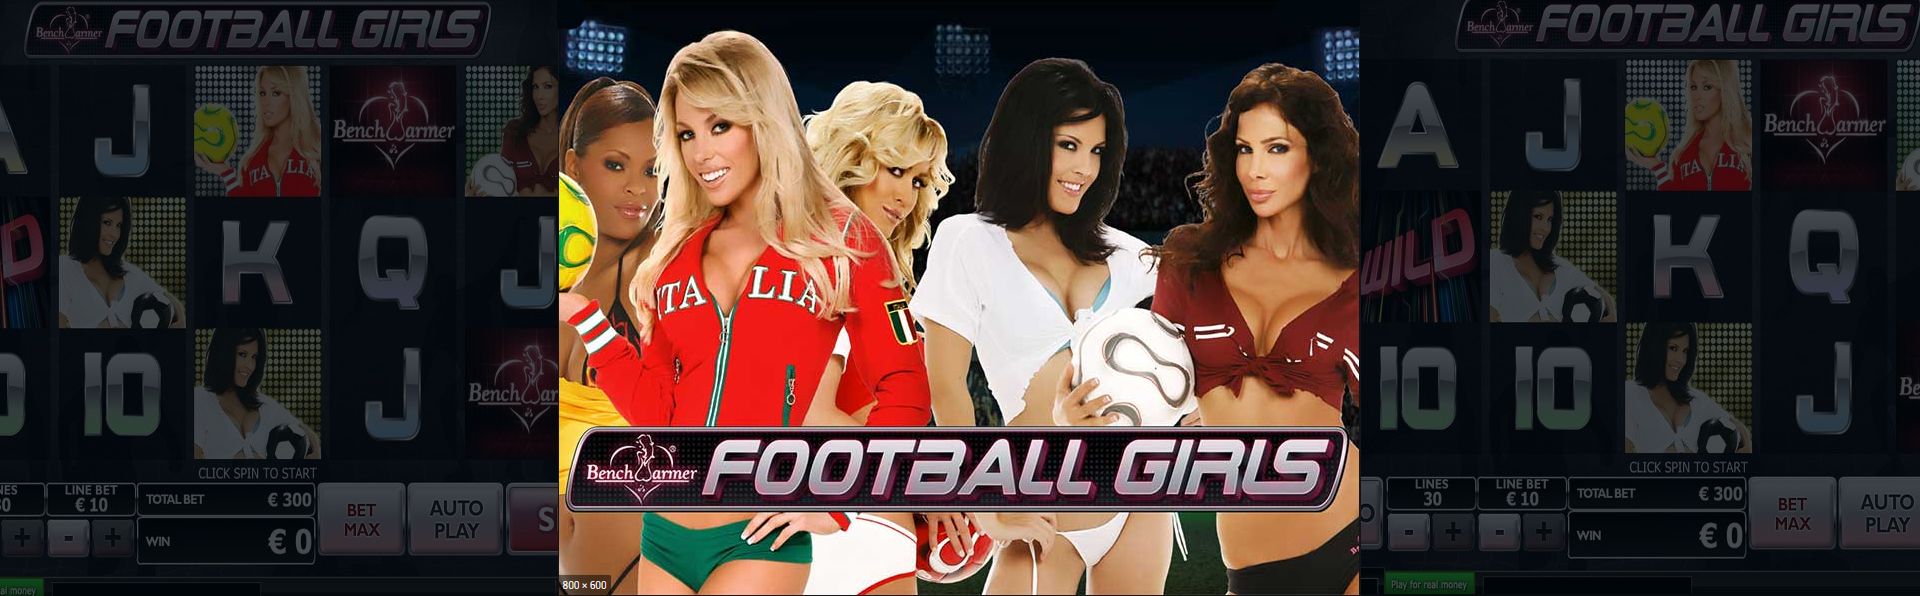 Benchwarmer Football Girls slot.